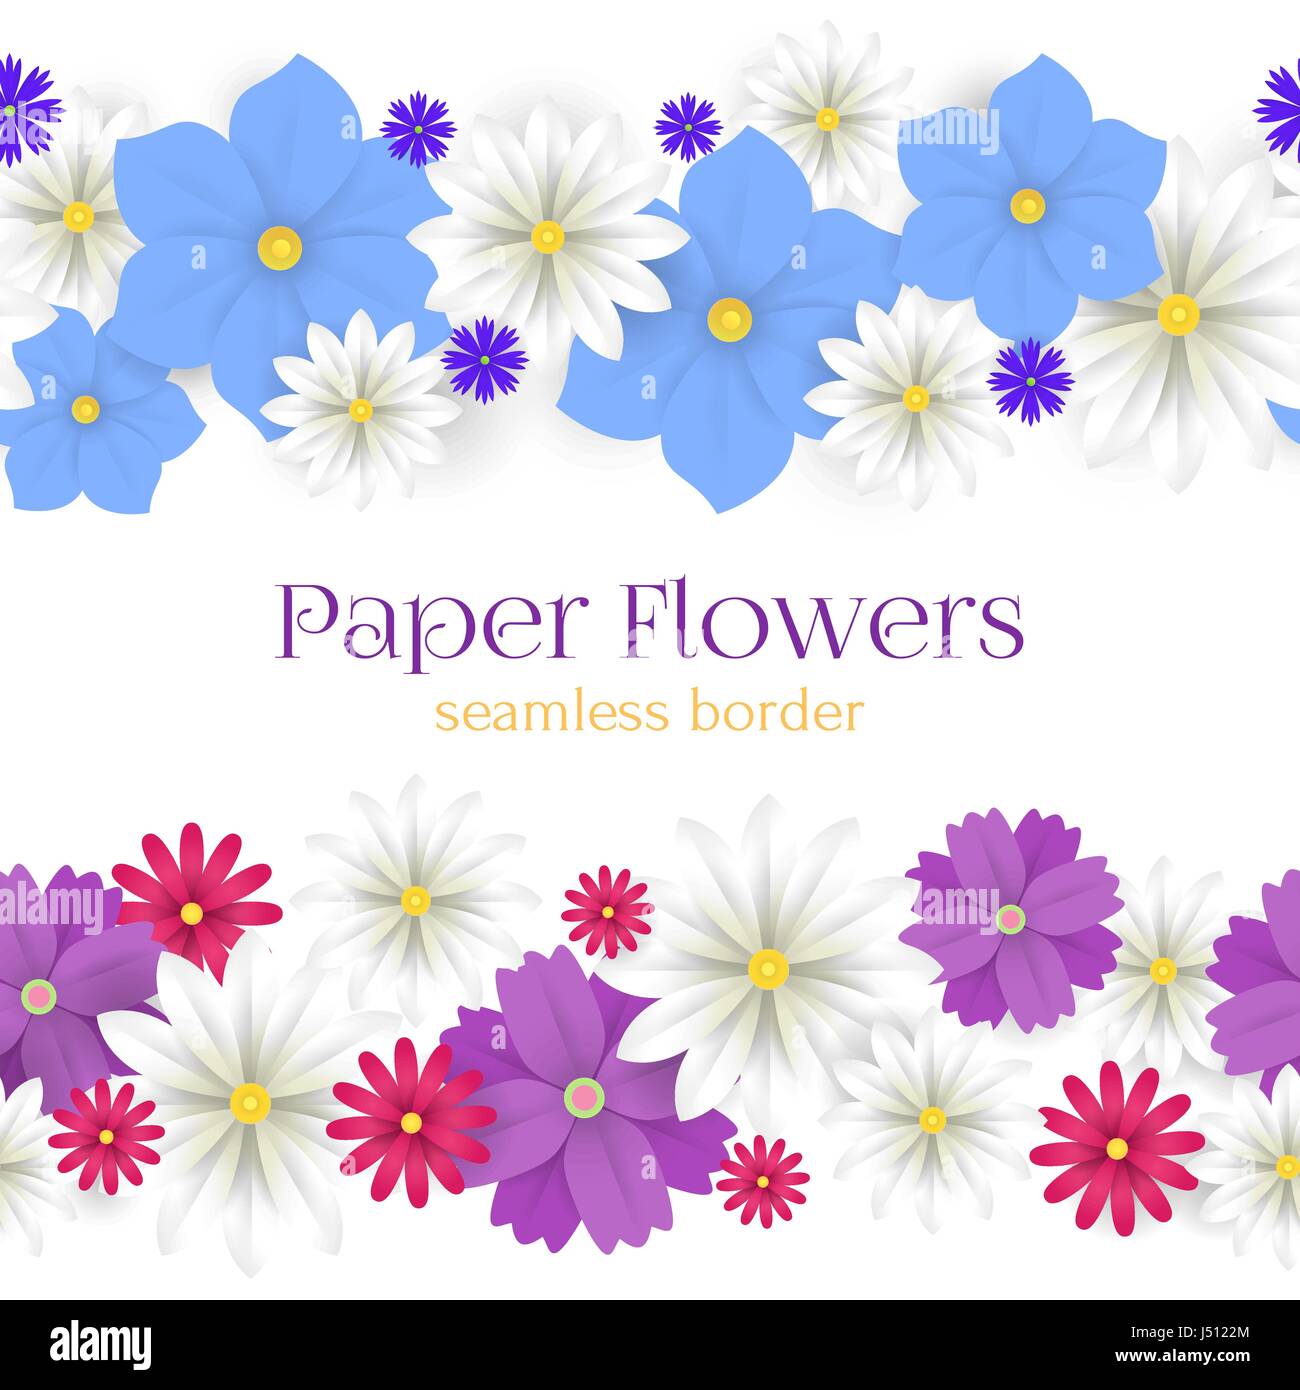 Bunte Papier Blumen horizontale nahtlose Grenzen Vektorgrafik. 3D Origami abstrakte Blumendekoration. Papier-Art-Stil für Banner, Poster, Werbung, Website, Online-shopping, Werbung. Stock Vektor